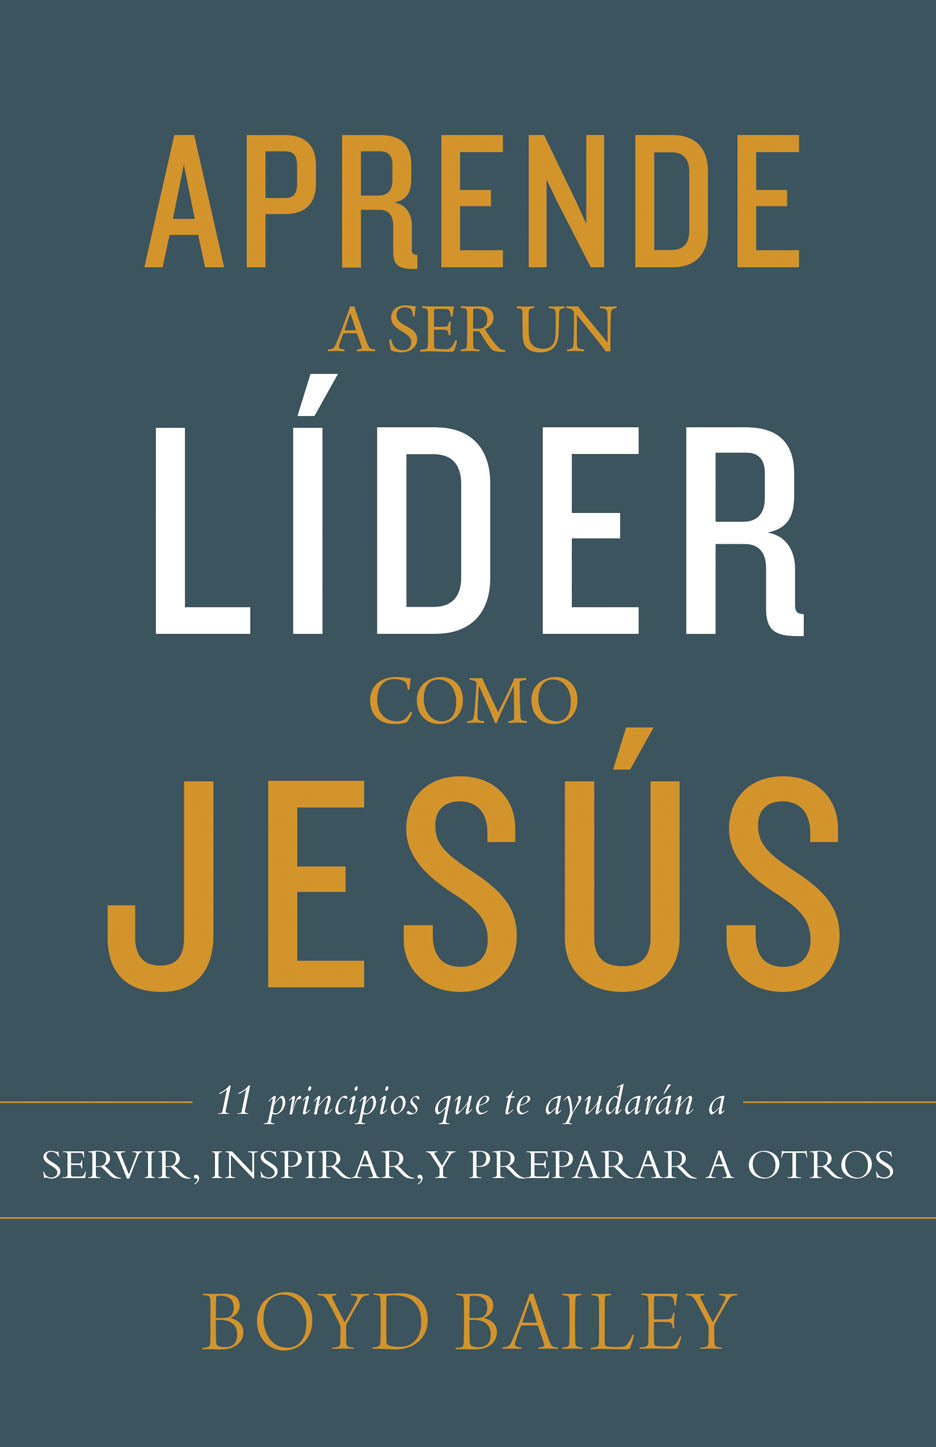 Aprende A Ser un Líder como Jesús - Librería Libros Cristianos - Libro